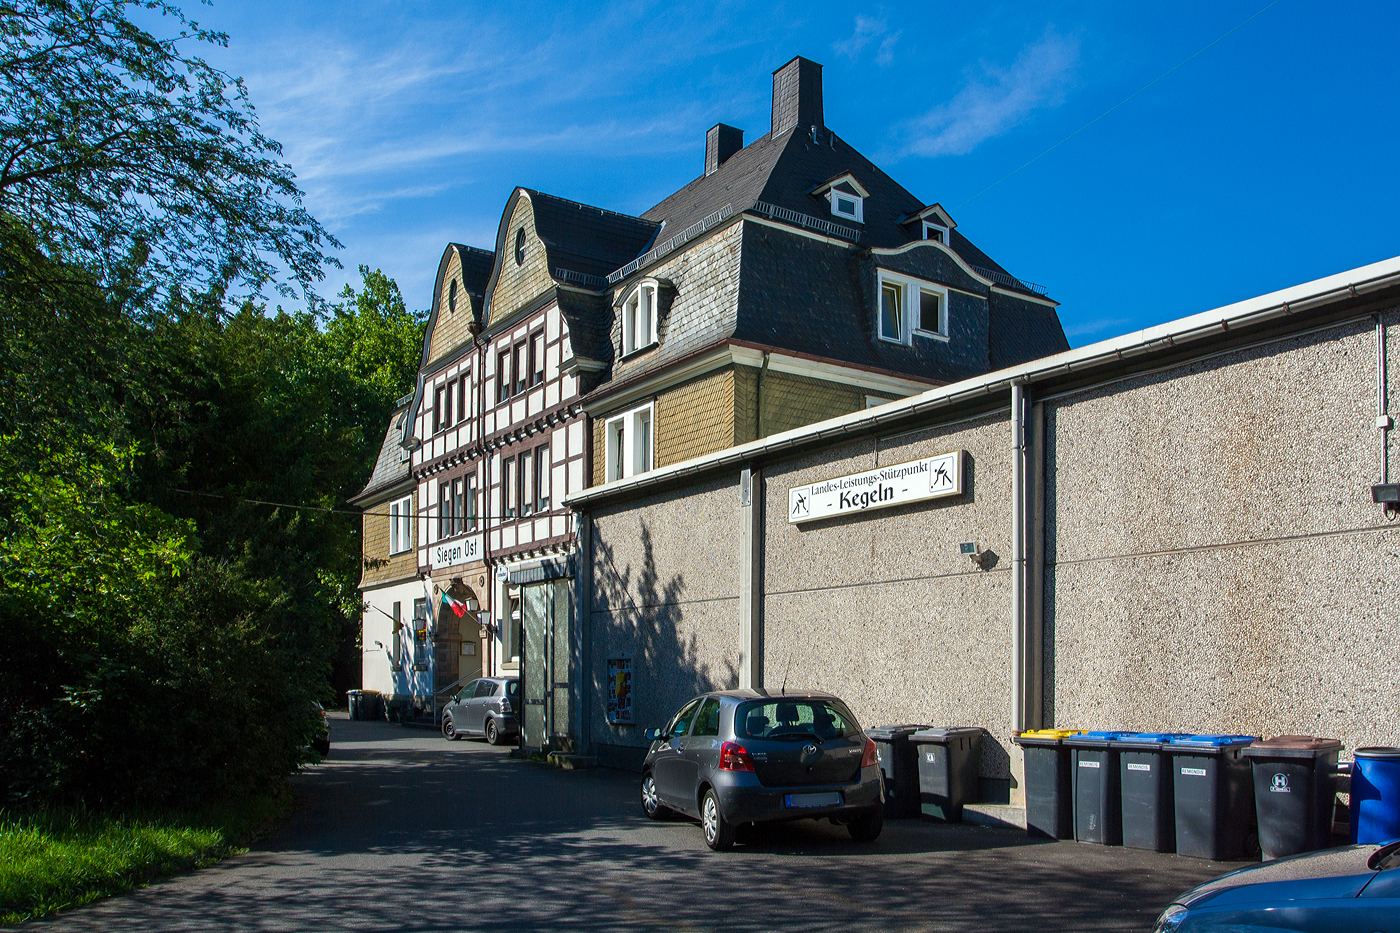 Der ehemalige Bahnhof Siegen Ost  bei km106,2 (1,7 km) der KBS 445 – Dillstrecke (Siegen–Gießen), heute Bierstube/Restaurant, hier am 27 Juni 2011.

Der Bahnhof Siegen Ost wurde 1993 für den Personenverkehr geschlossen,  heute ist Siegen Ost nur noch als Gbf bekannt.
